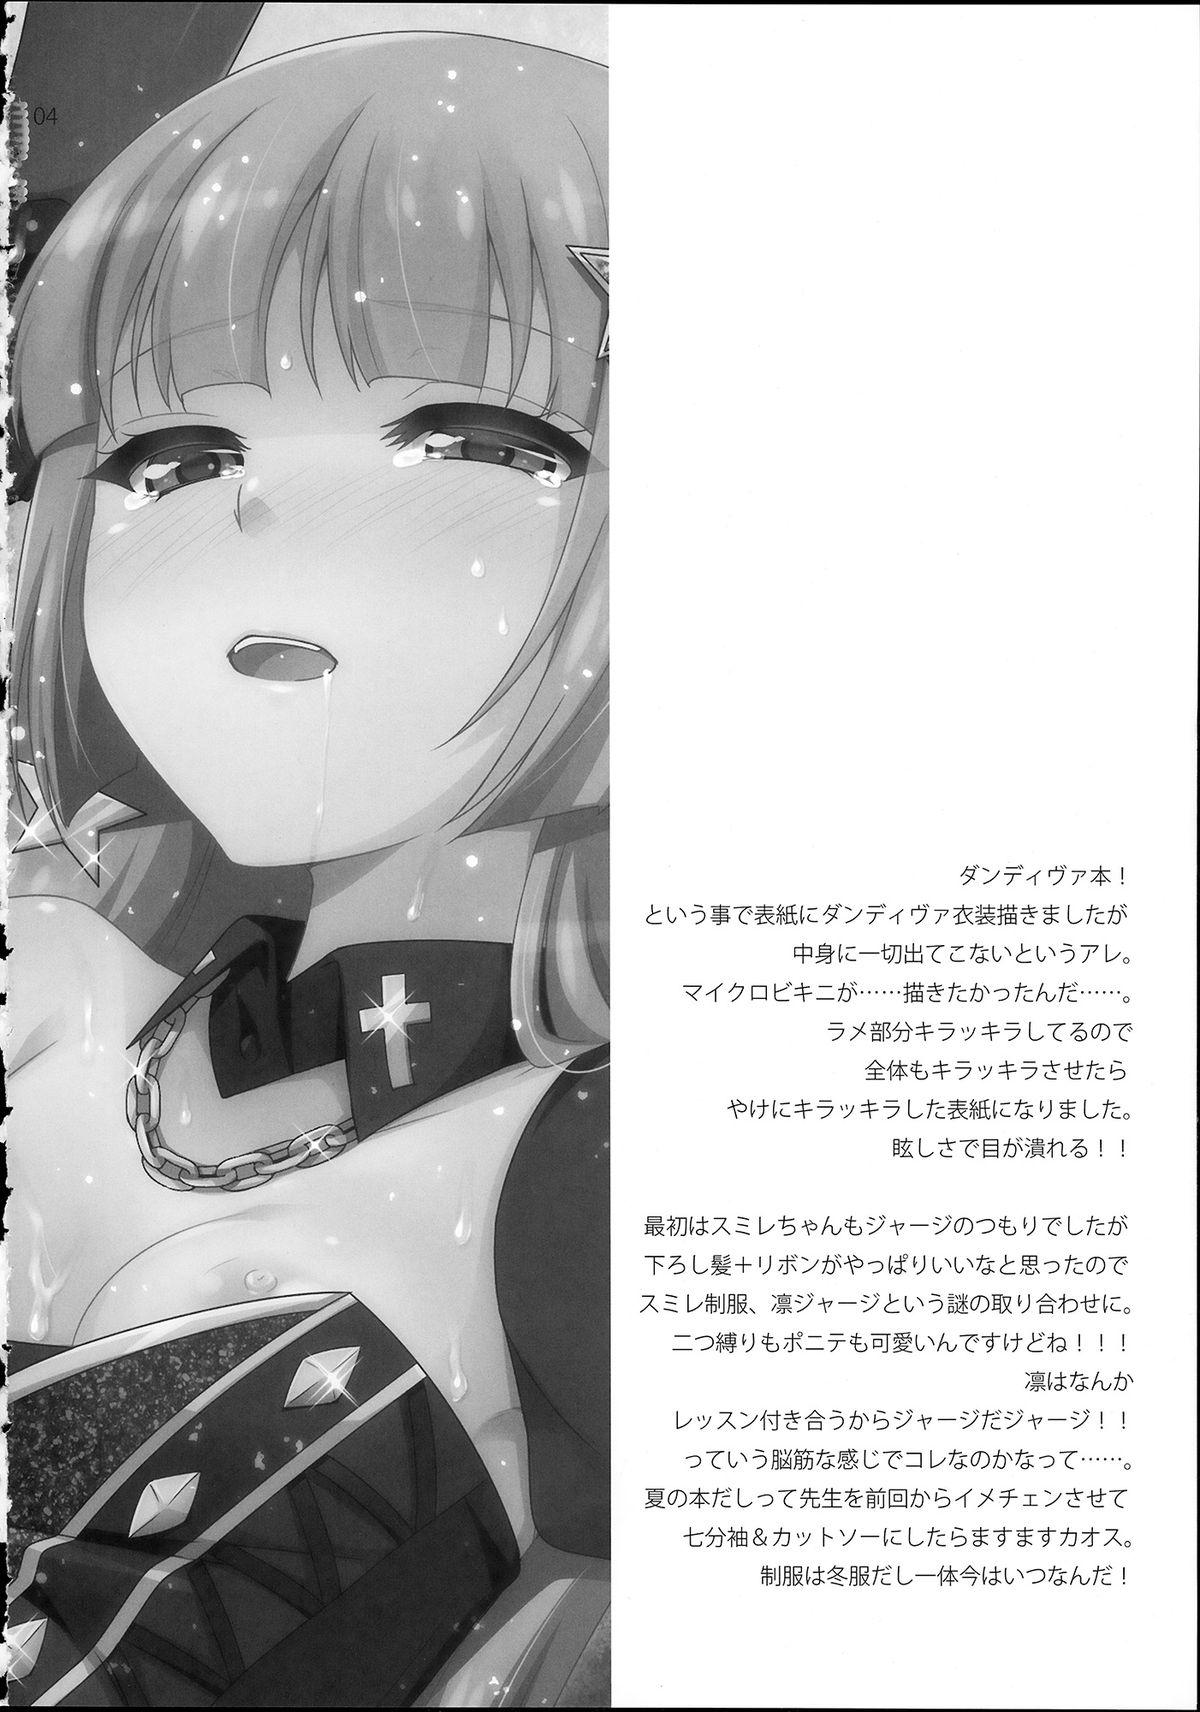 Mojada Yoru no Odoriko - Aikatsu Female - Page 4